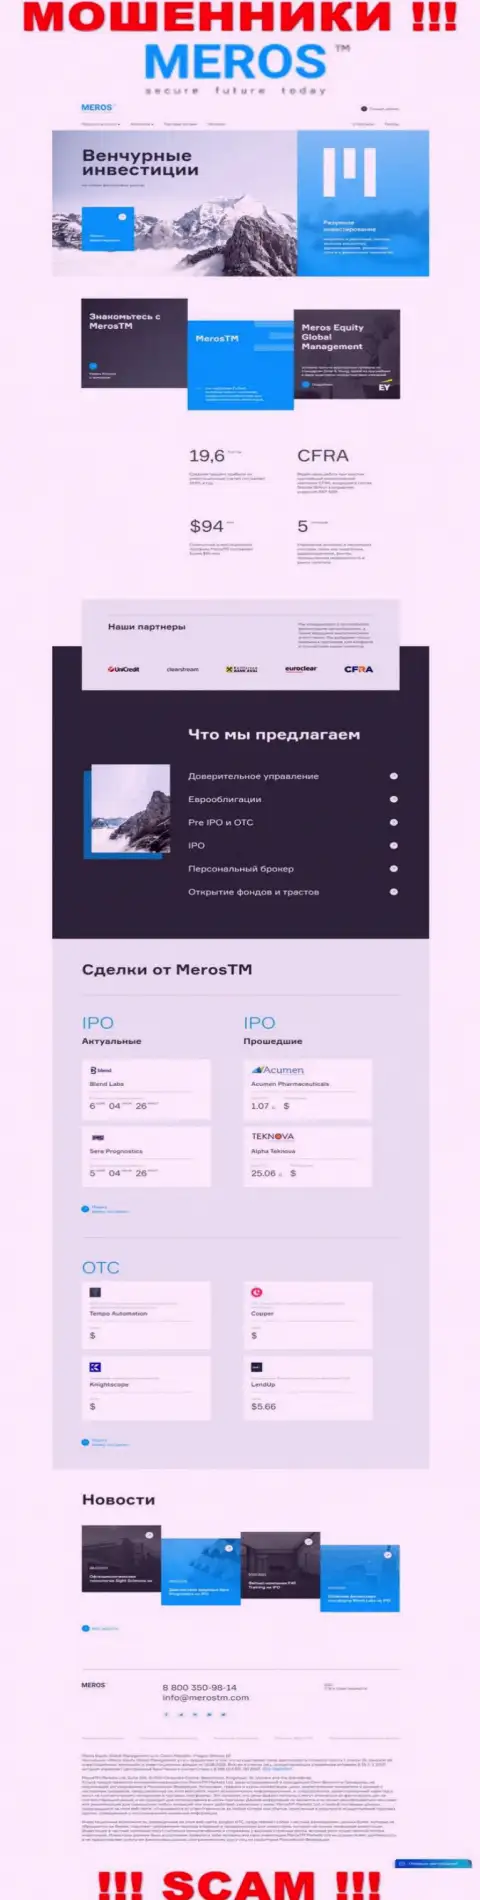 Обзор официального сайта шулеров Мерос ТМ